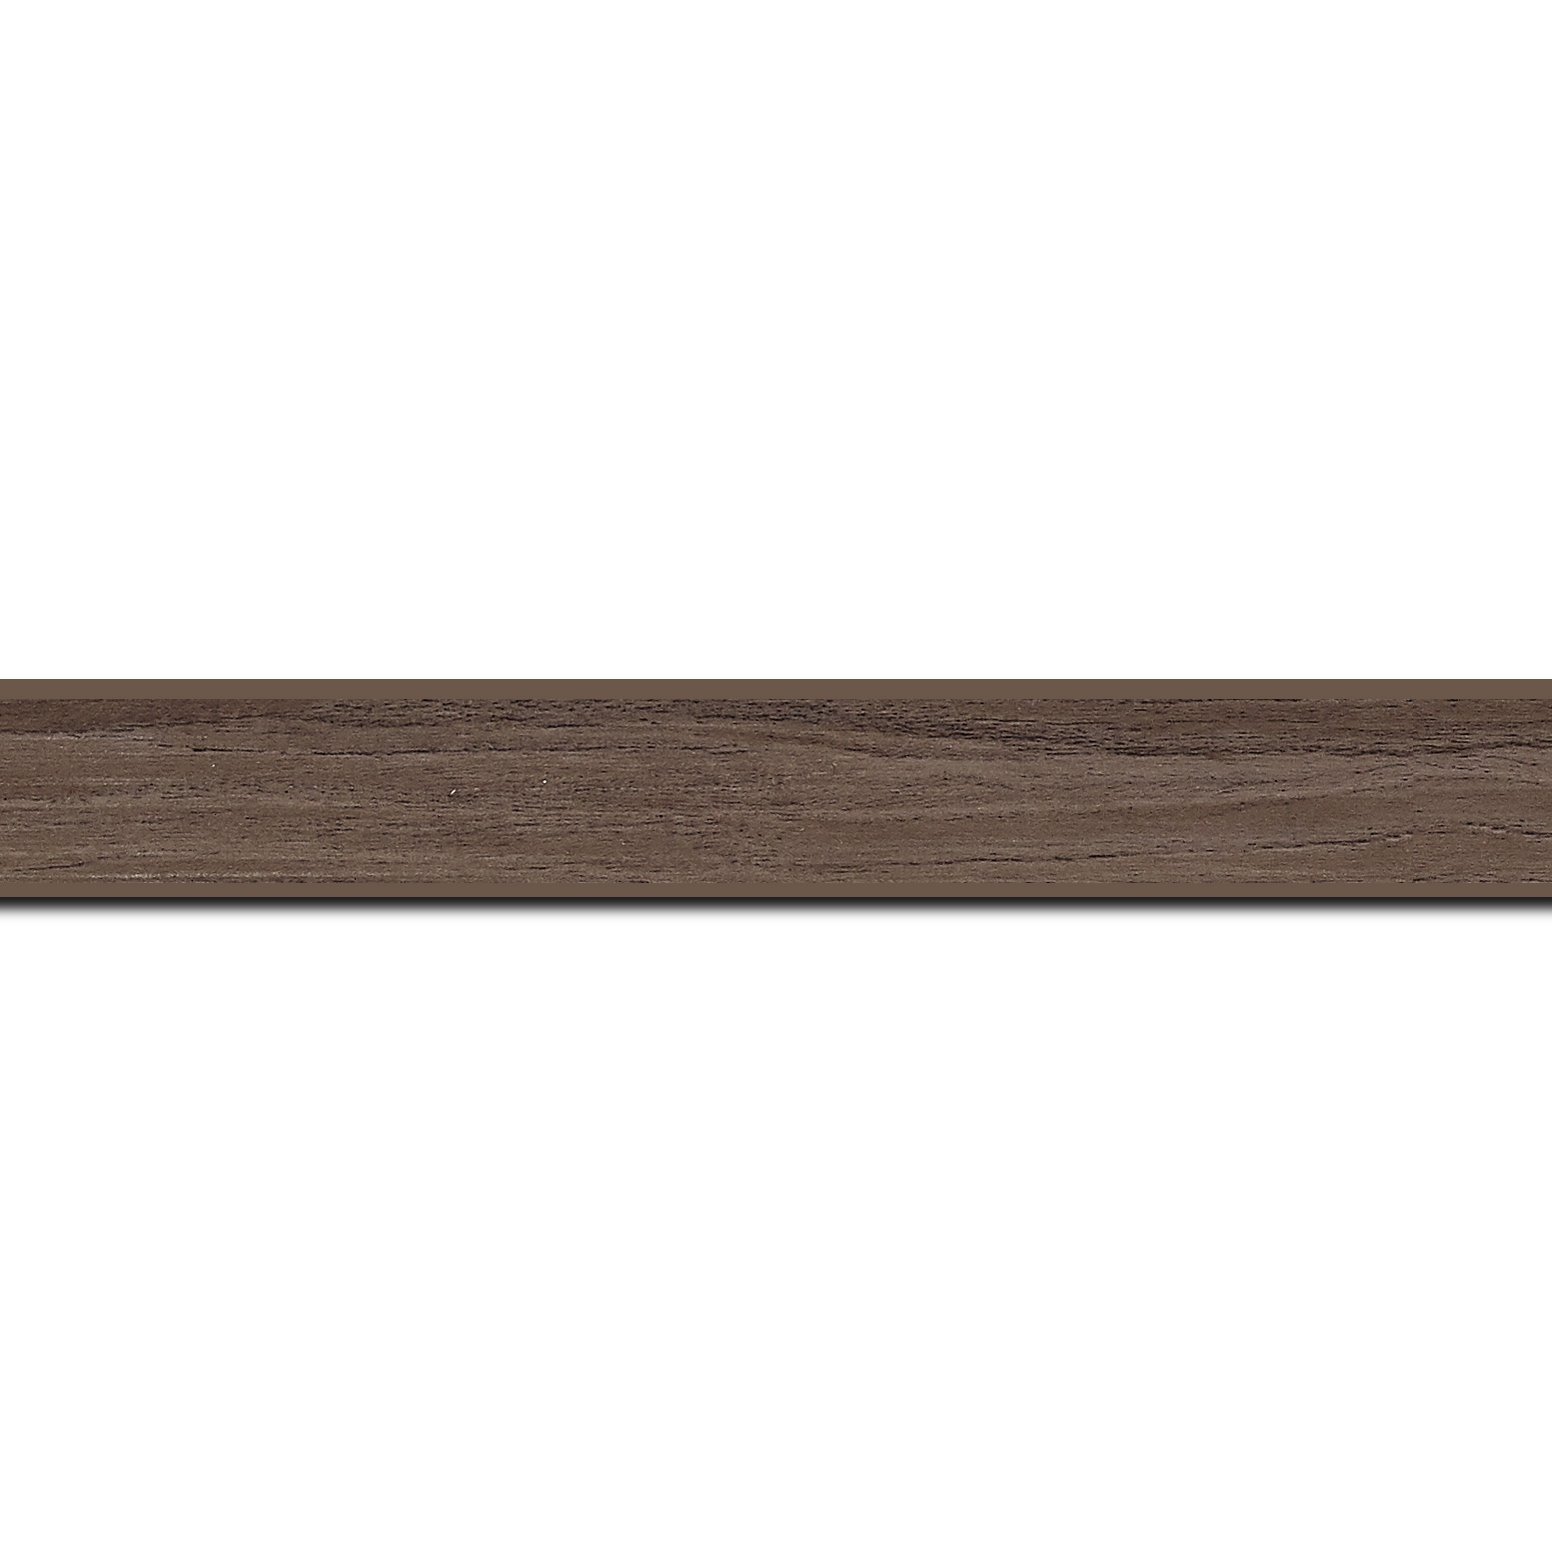 Pack par 12m, bois profil plat largeur 2cm décor bois noyer (longueur baguette pouvant varier entre 2.40m et 3m selon arrivage des bois)